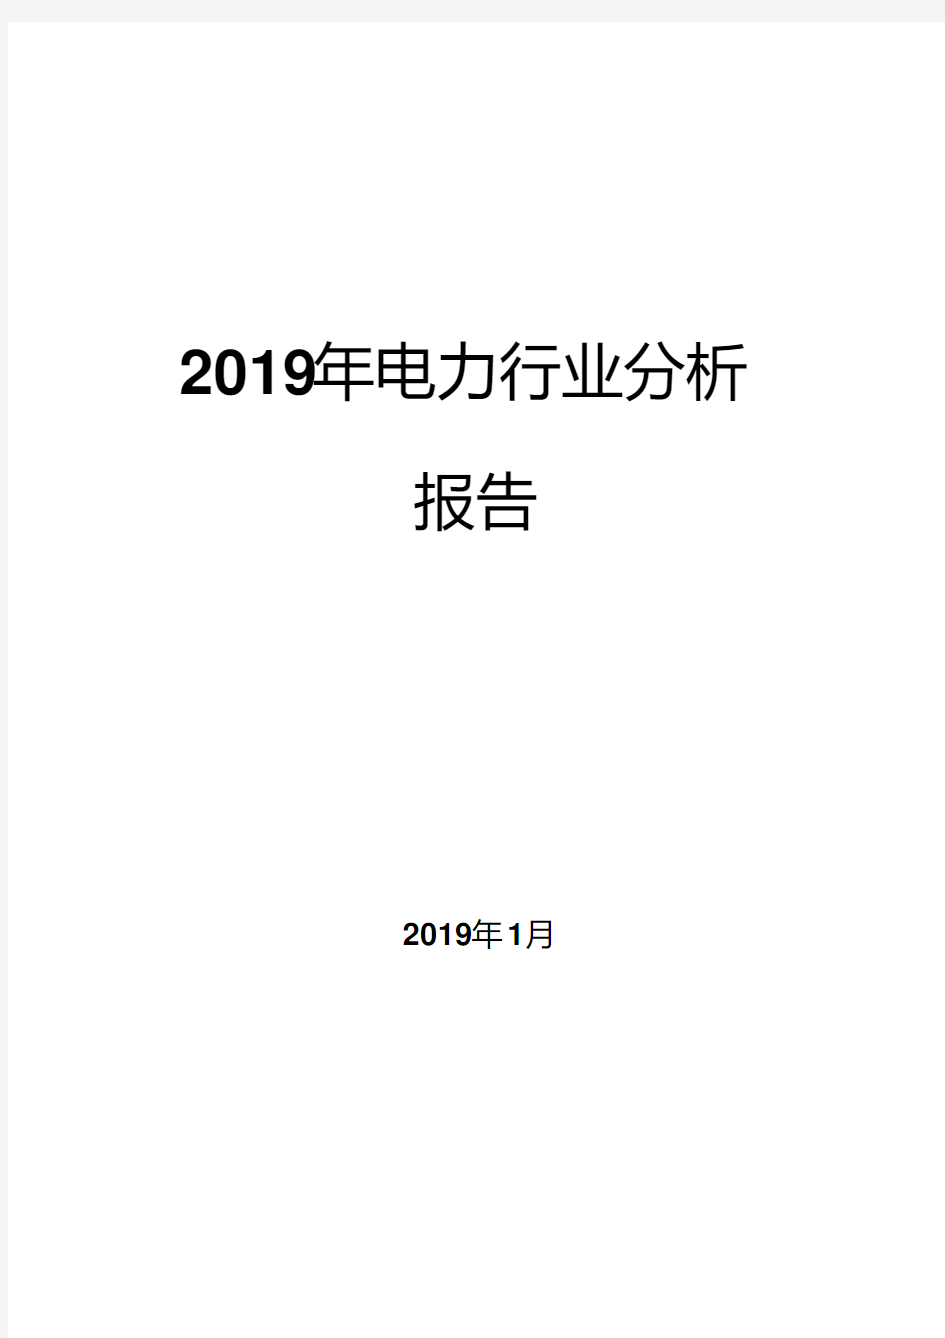 2019年电力行业分析报告